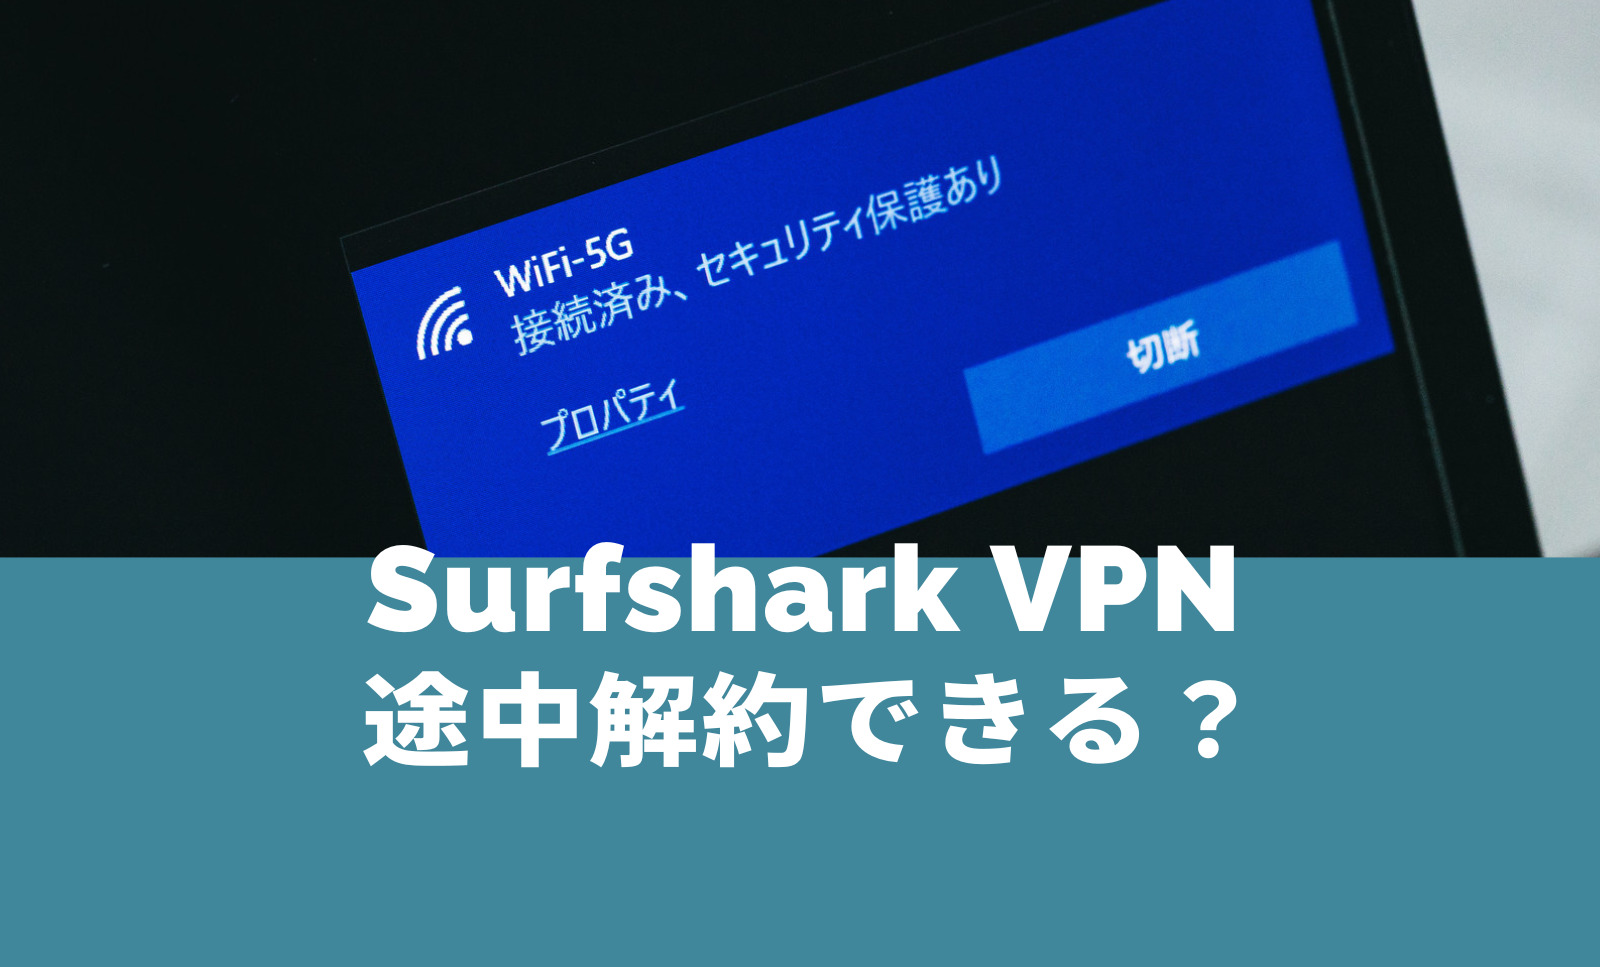 Surfshark VPNの2年契約は途中解約できる？2年間プランで返金はある？のサムネイル画像